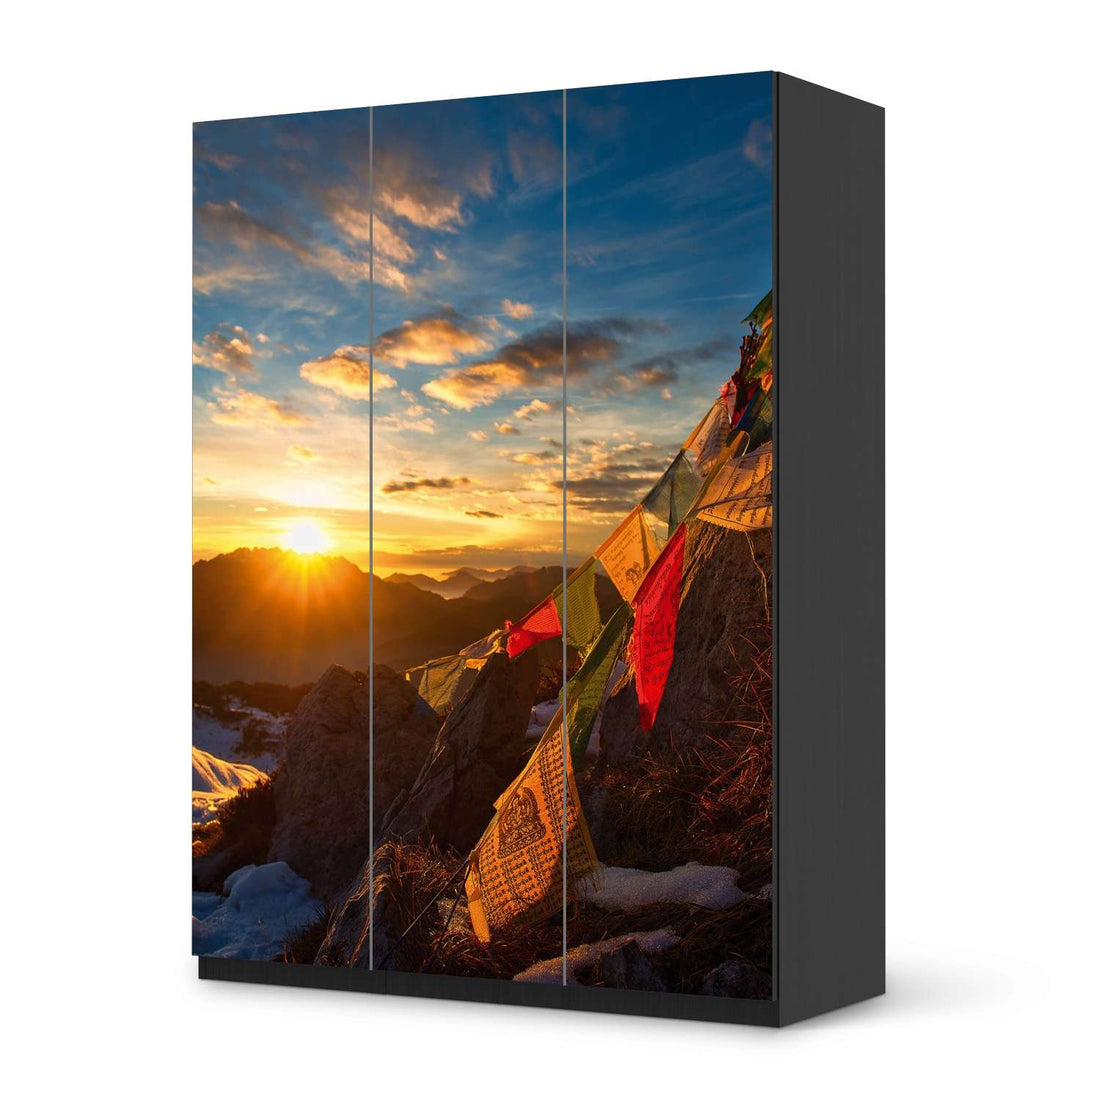 Folie für Möbel Tibet - IKEA Pax Schrank 201 cm Höhe - 3 Türen - schwarz